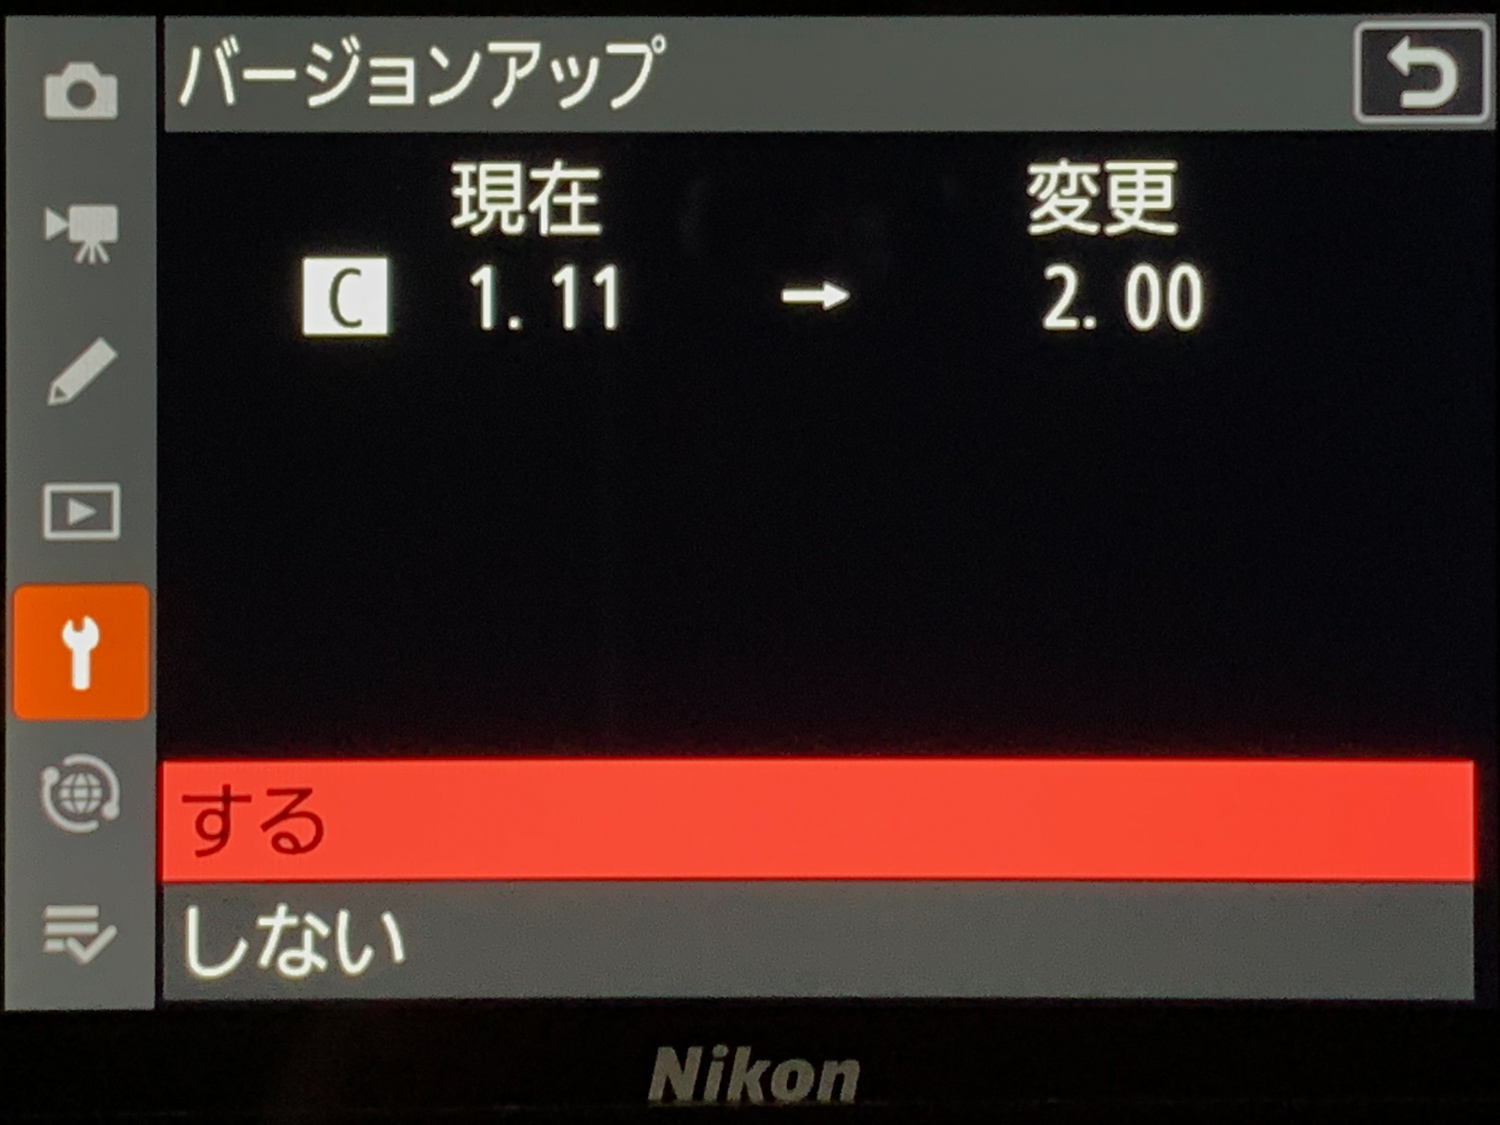 Nikon Z9のファームウェアVer.2.00